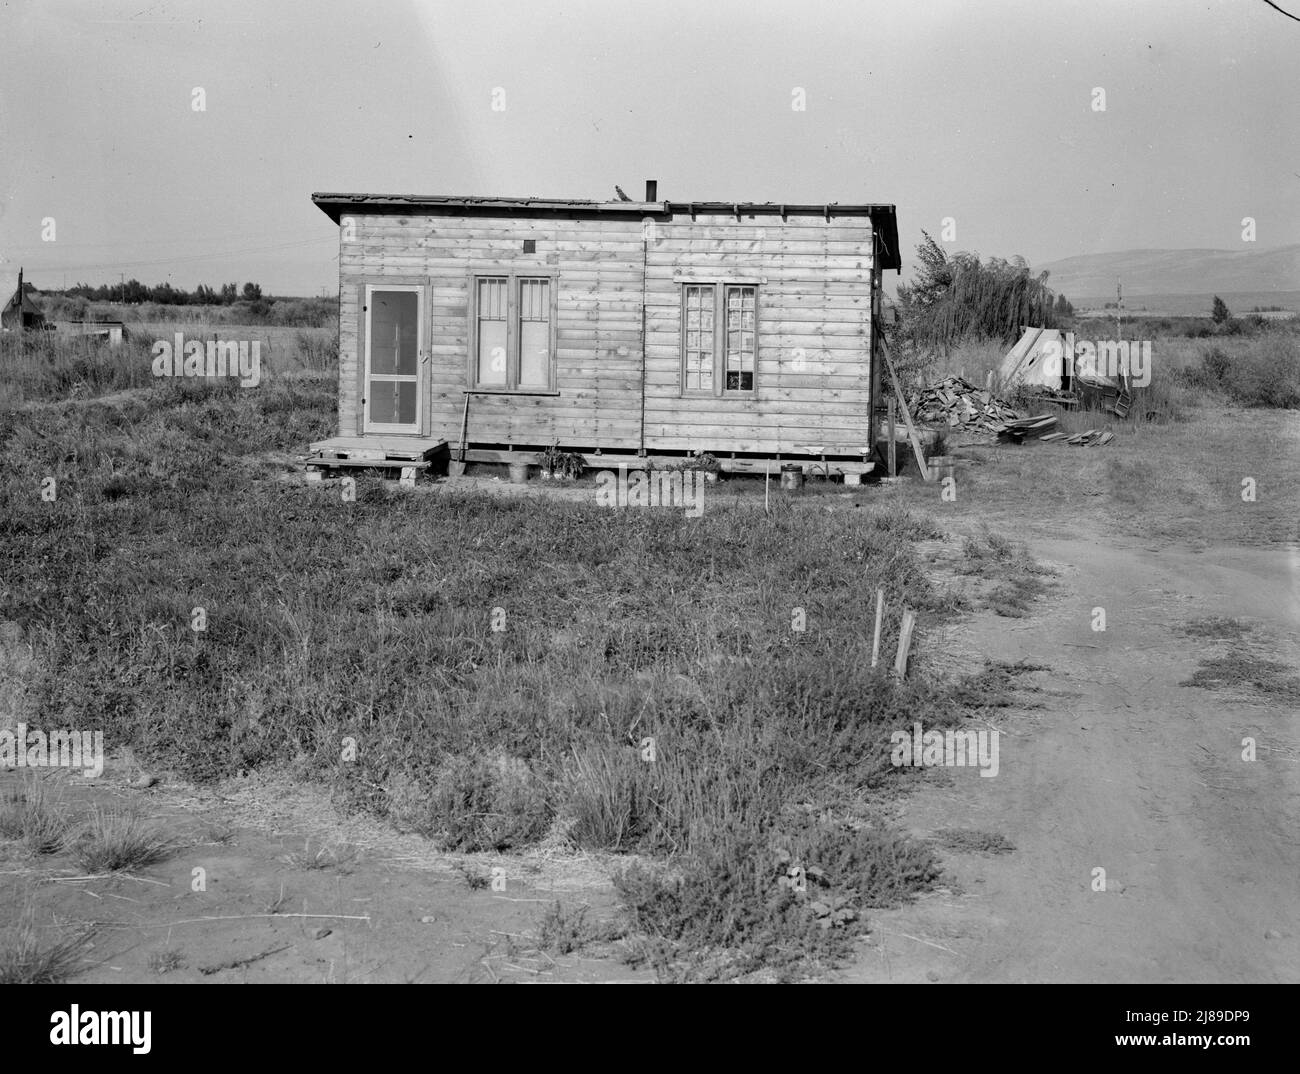 Washington, Yakima. Les maisons sont construites un peu à l'autre avec tous les matériaux disponibles. De nombreux réfugiés touchés par la sécheresse s'installent dans le parc Sumac, l'une des grandes villes limitrophes de Yakima. Banque D'Images